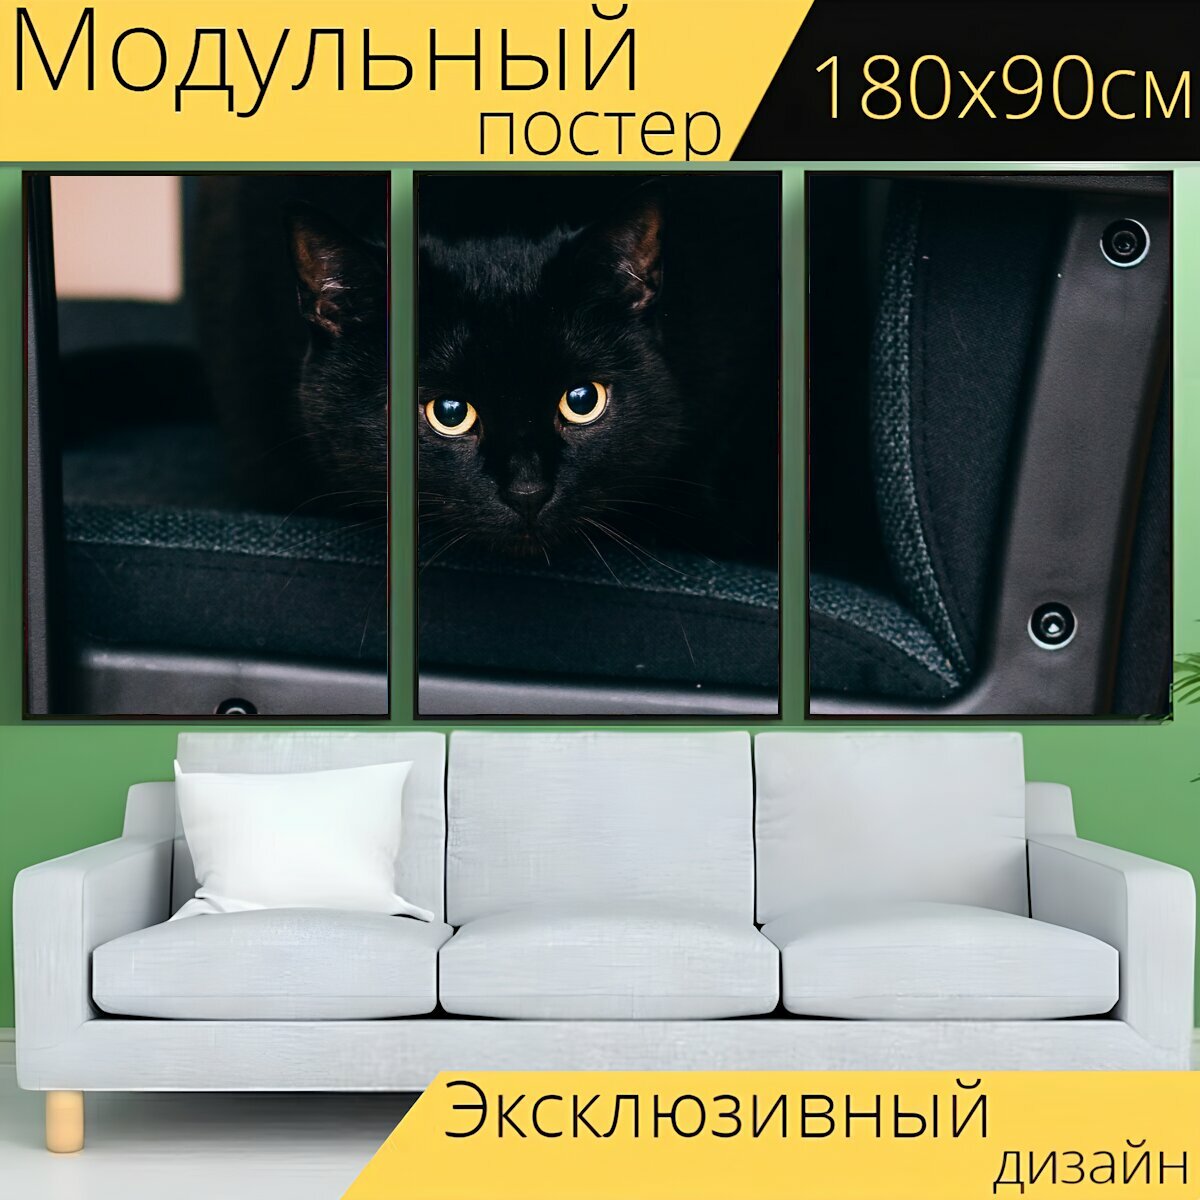 Модульный постер "Чернить, кошка, глаза" 180 x 90 см. для интерьера